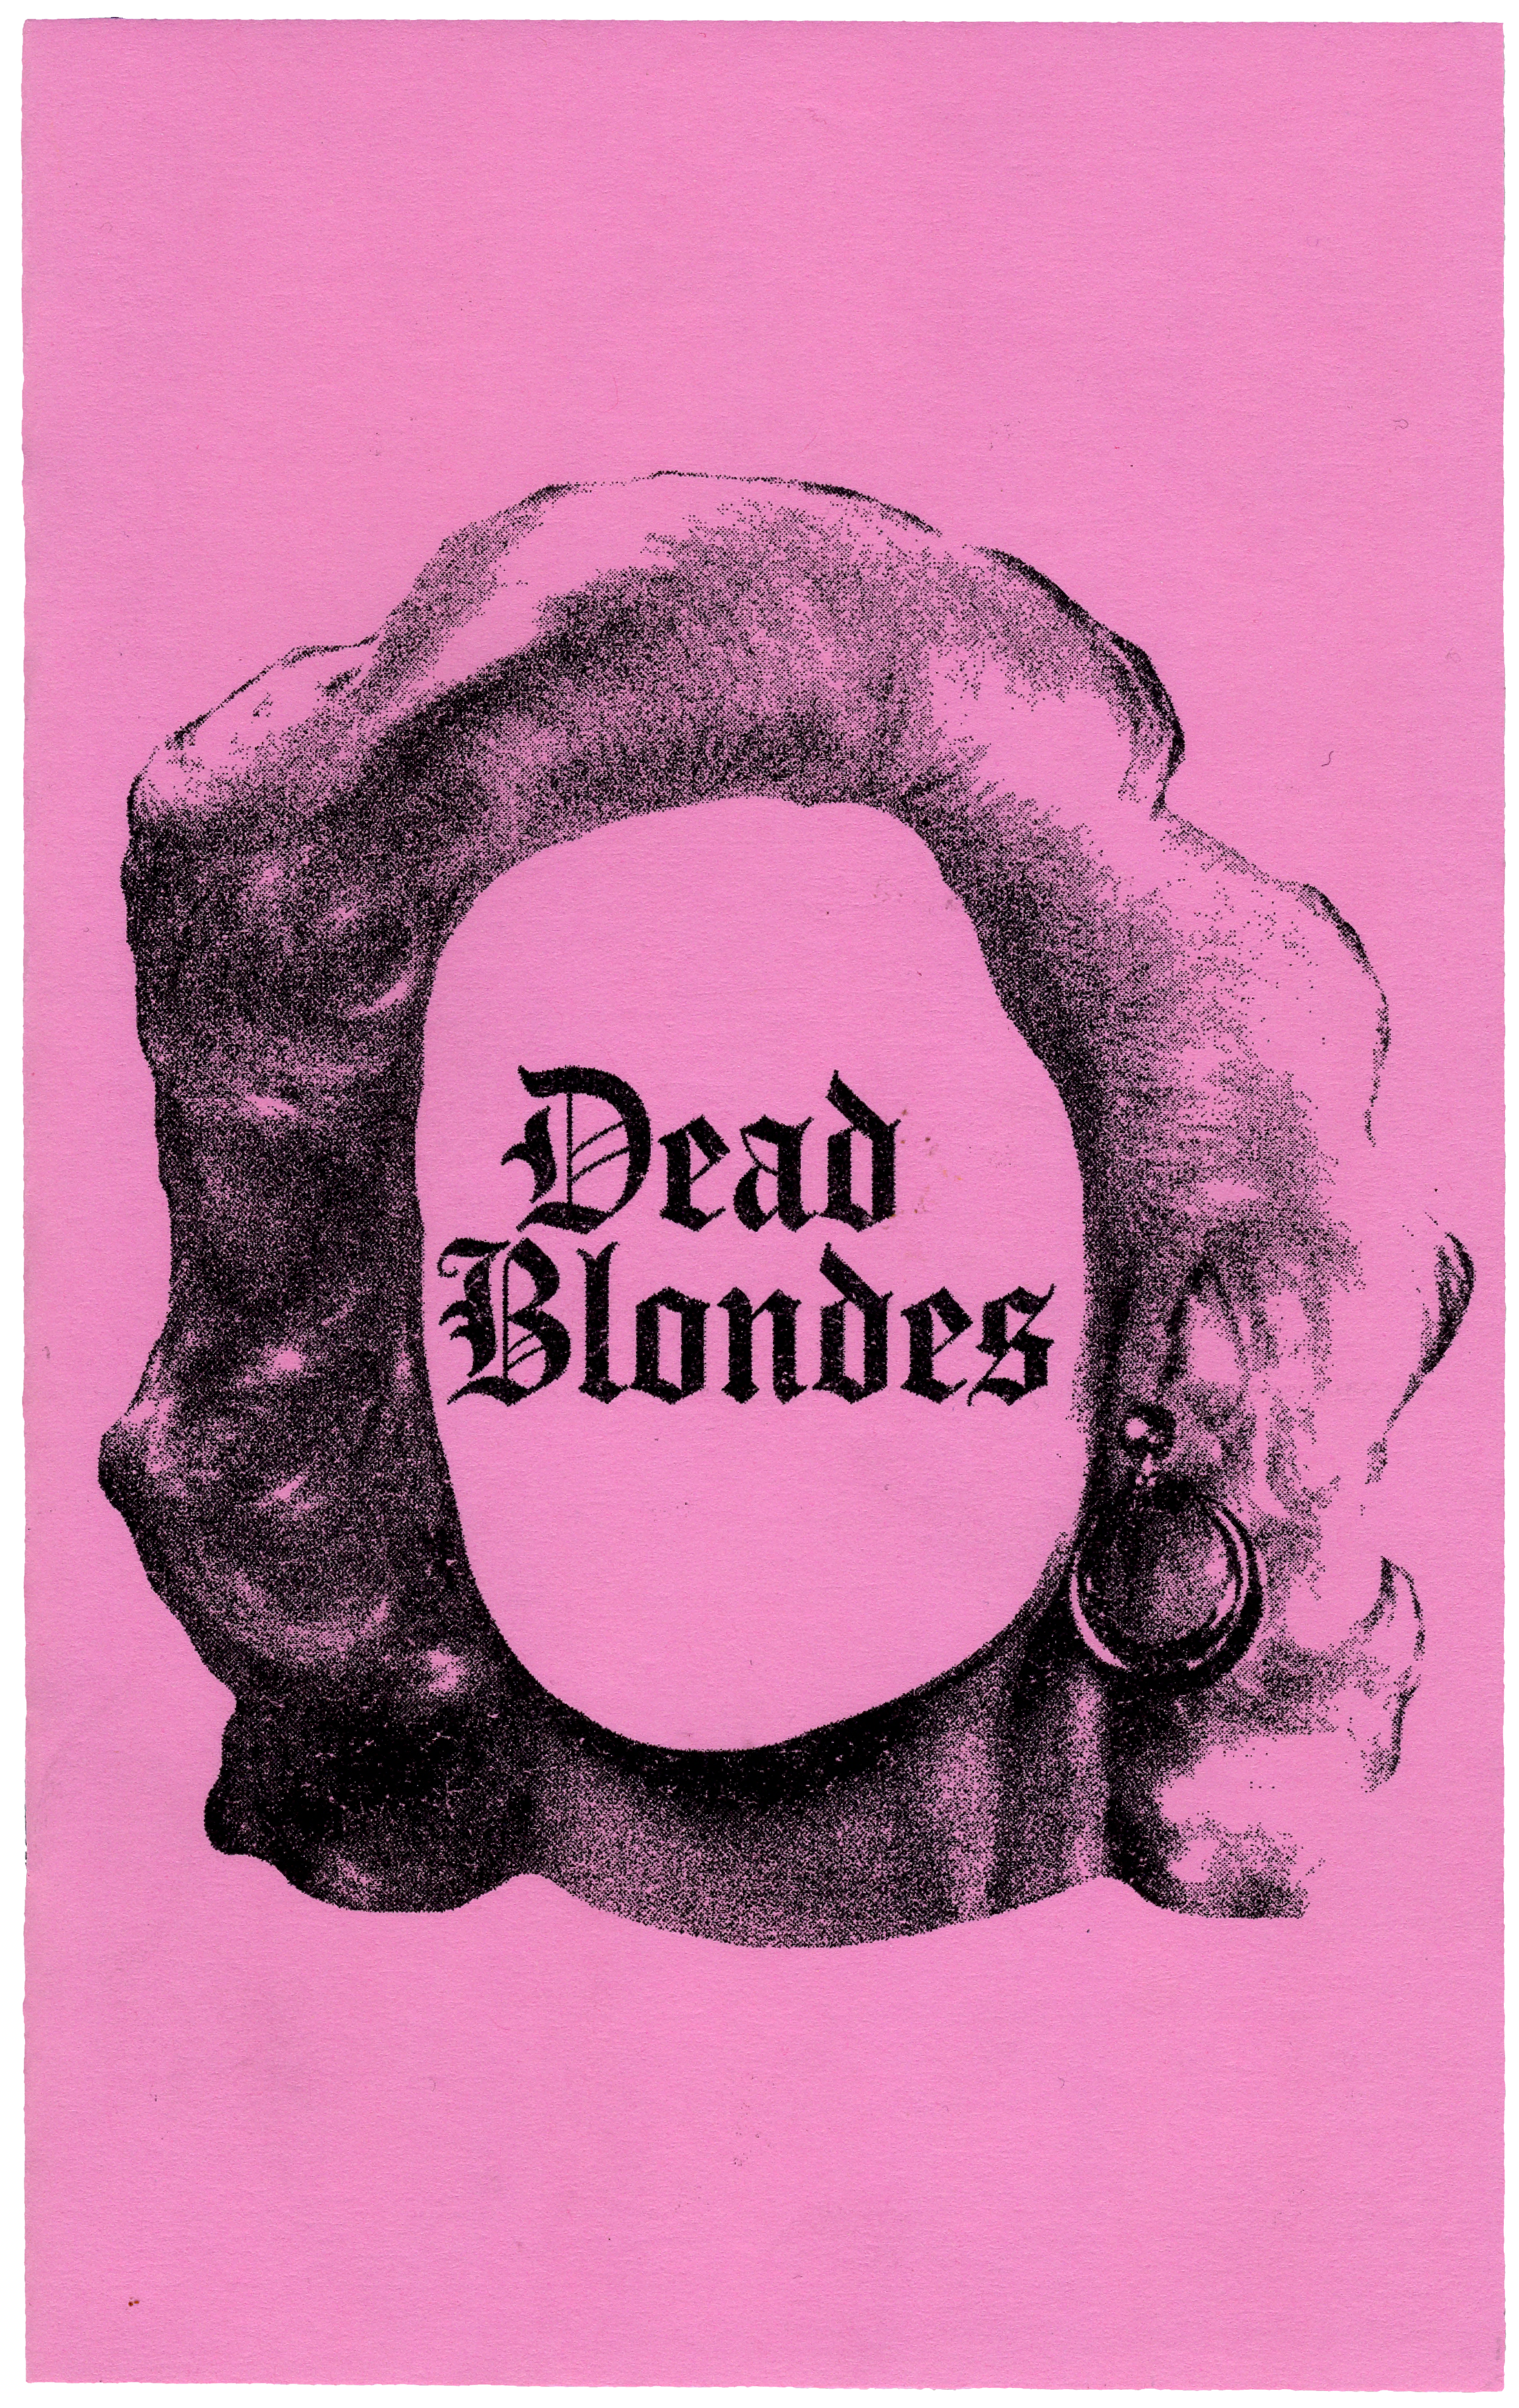 Dead Blondes